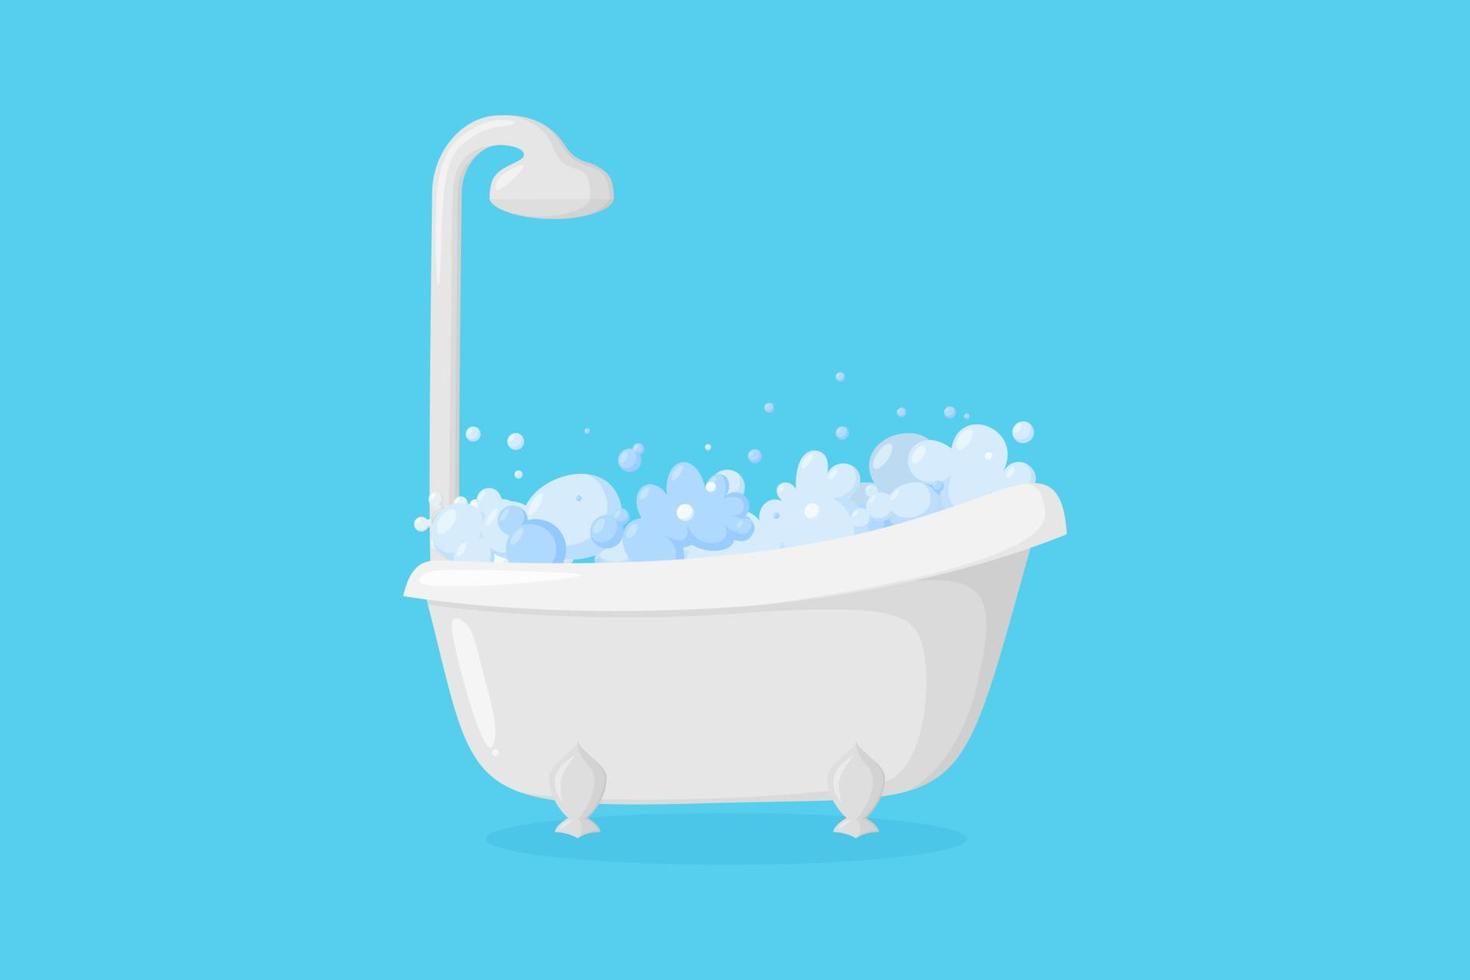 Badewanne mit Schaum und Dusche. Klauenfußwanne mit Blasen und Schaum isoliert auf blauem Hintergrund. Vektor-Illustration vektor